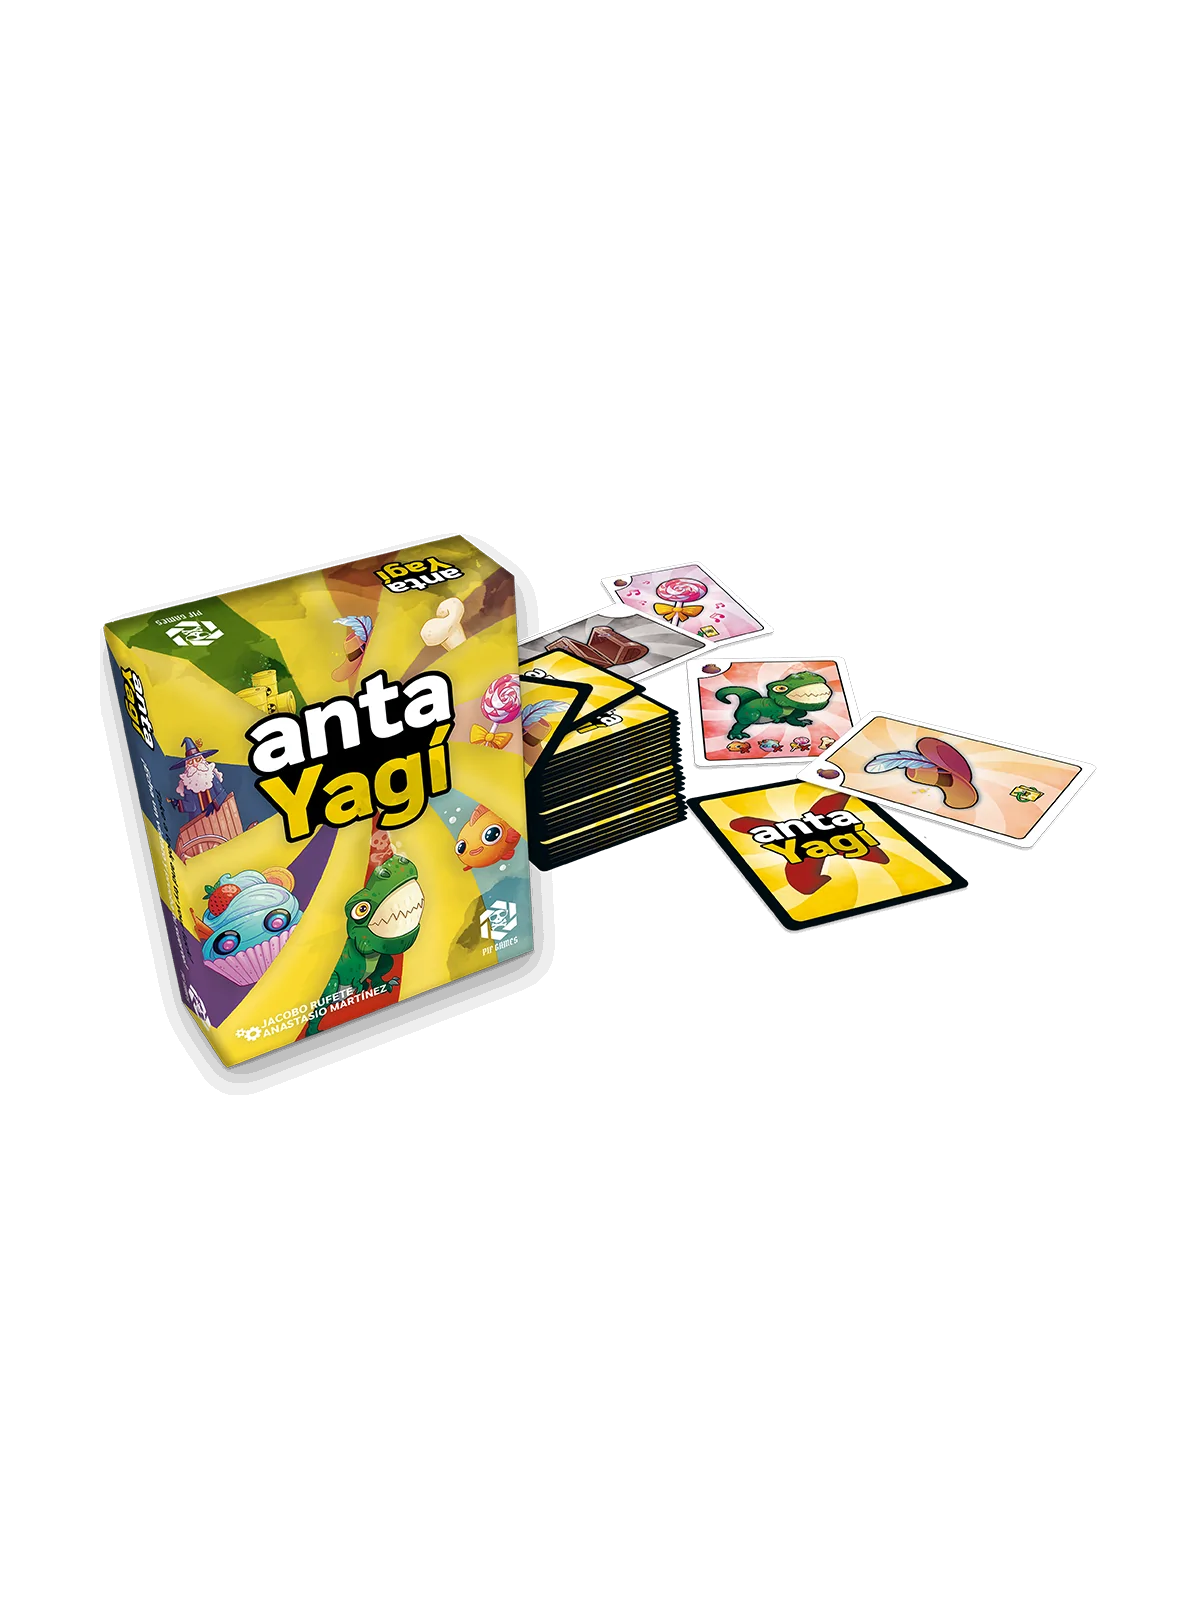 Comprar Antayagí barato al mejor precio 12,95 € de Tranjis Games